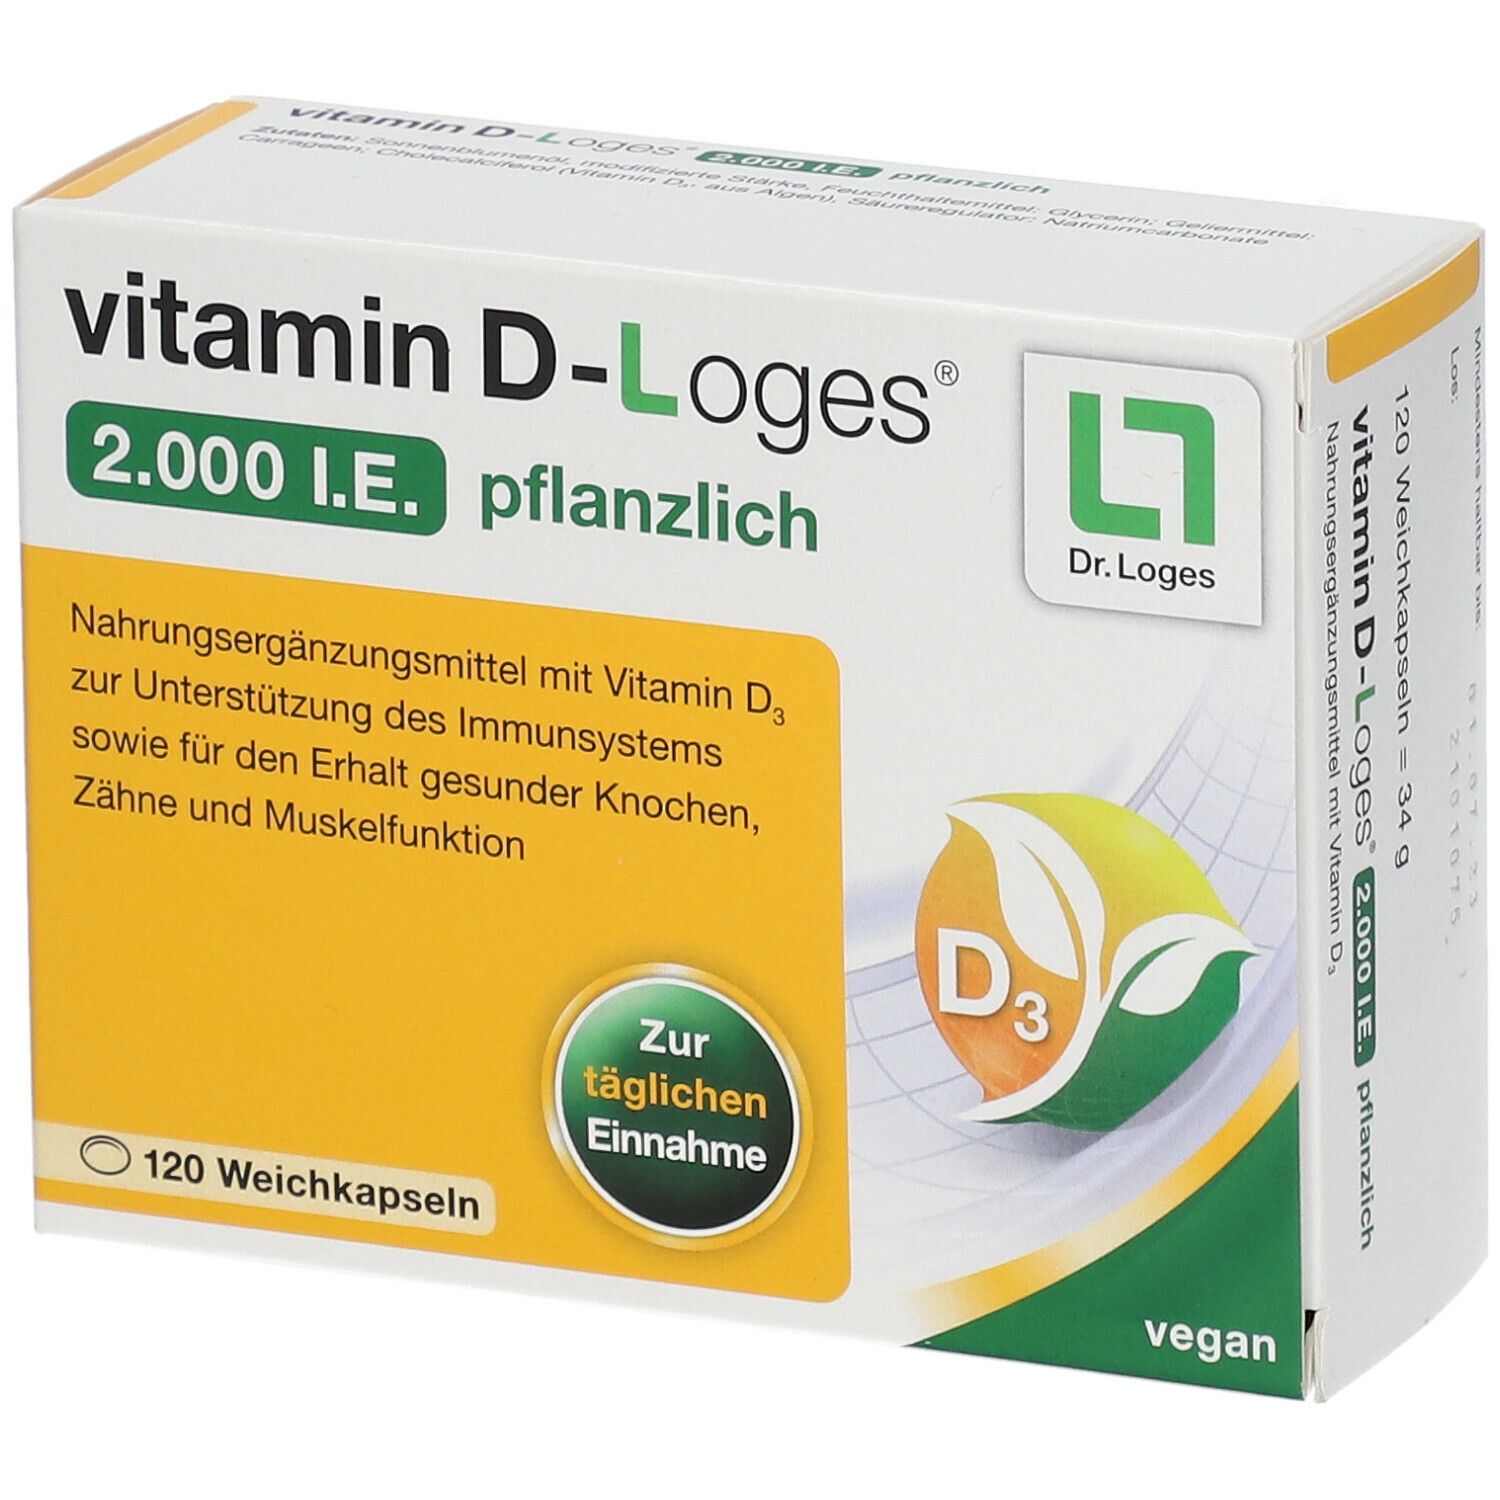 vitamin D-Loges® 2.000 I.E pflanzlich